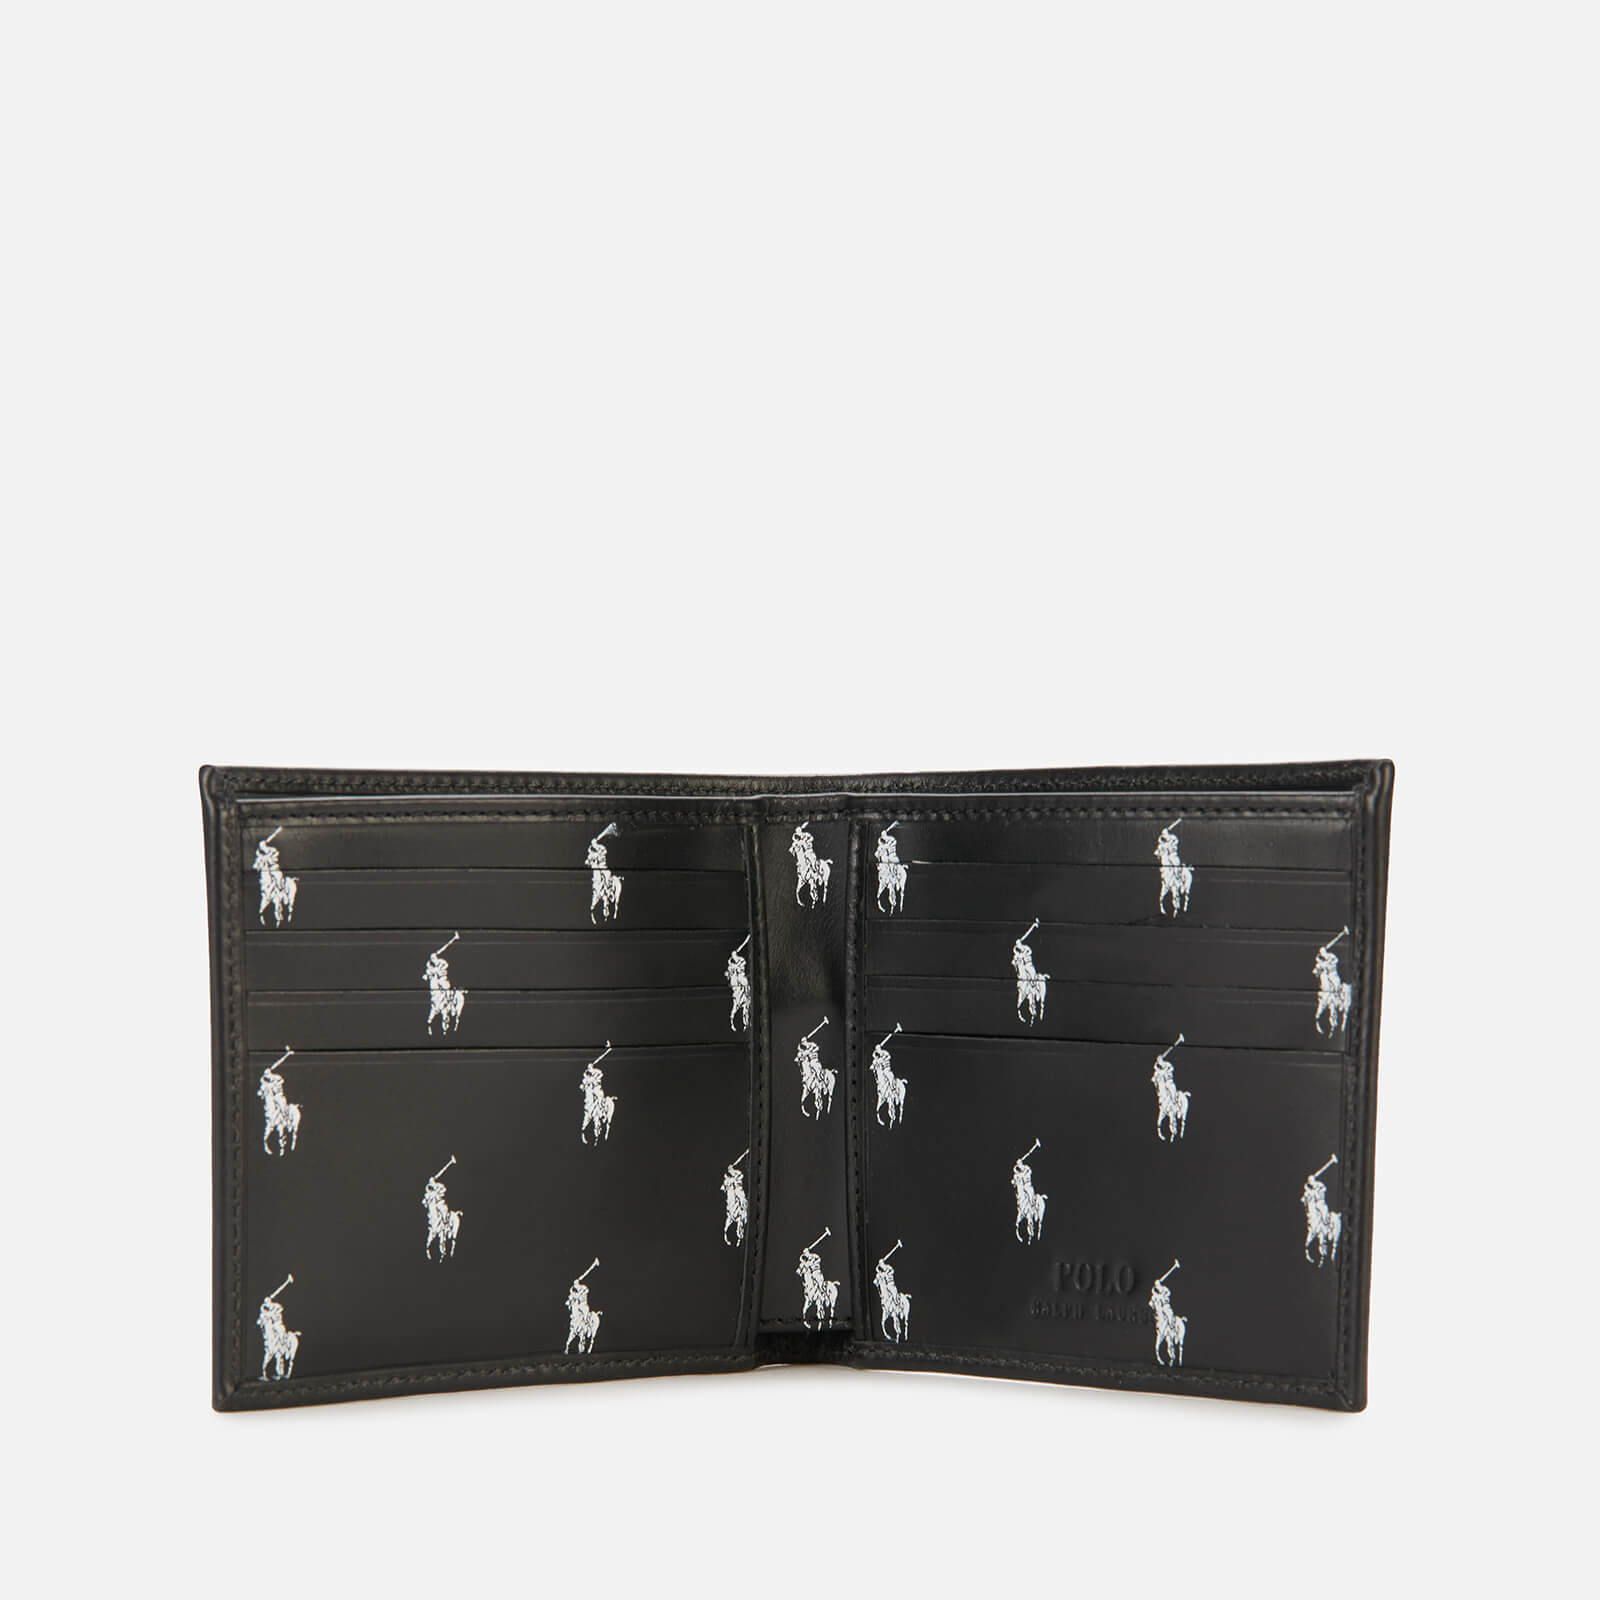 polo ralph lauren men's internal all over print bifold wallet - black/white